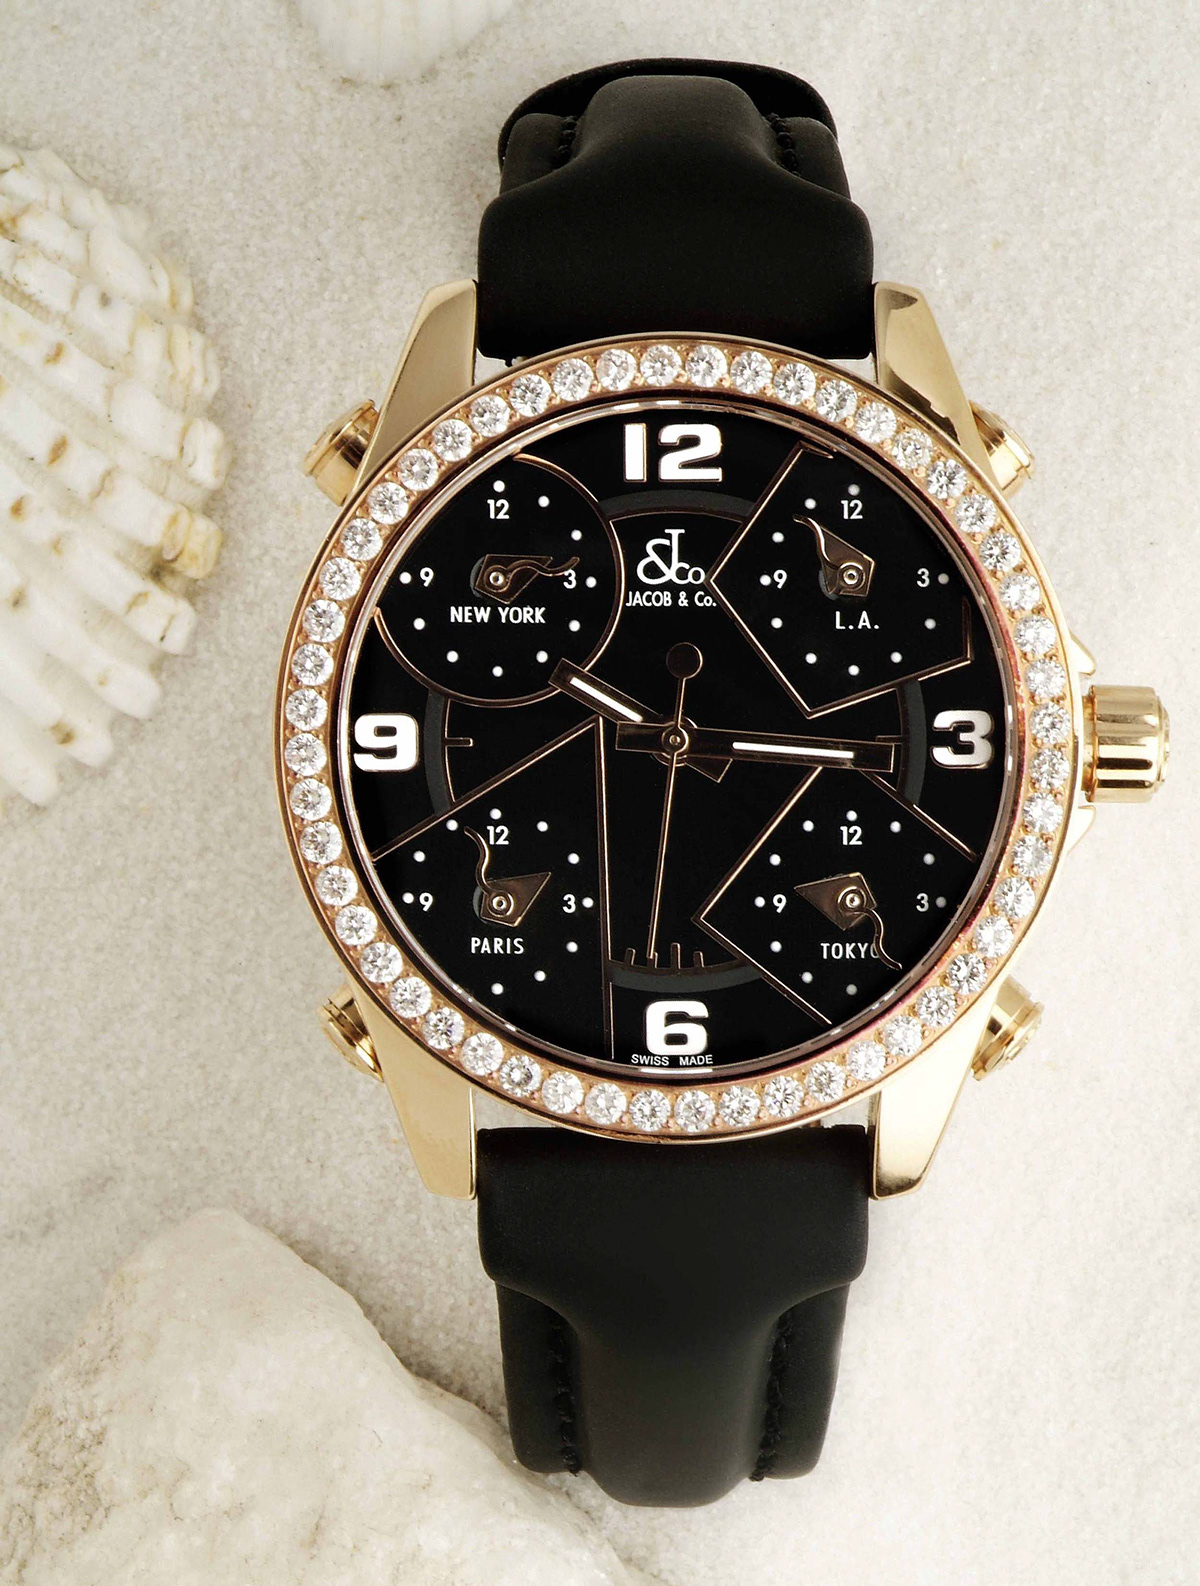 relojes watch publicidad lujo marca luxury